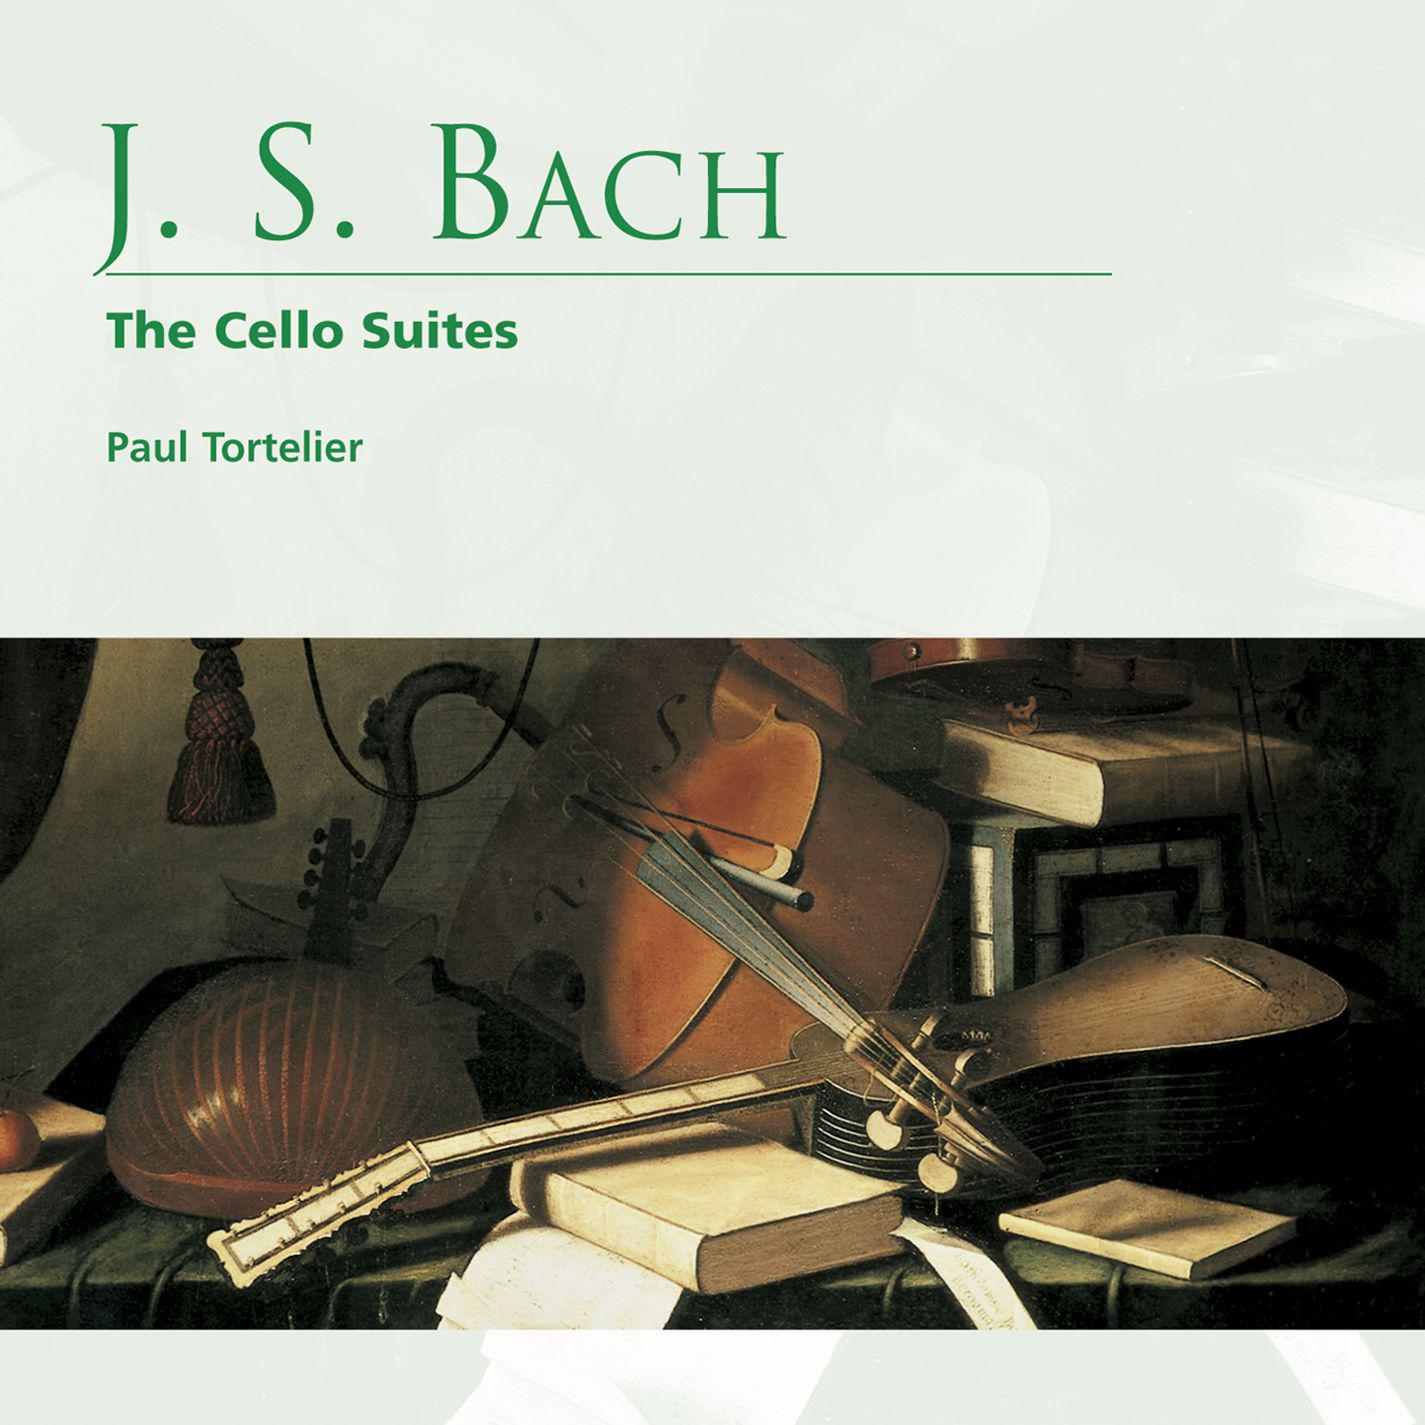 Cello Suite No. 5 in C Minor BWV 1011: VII. Gigue